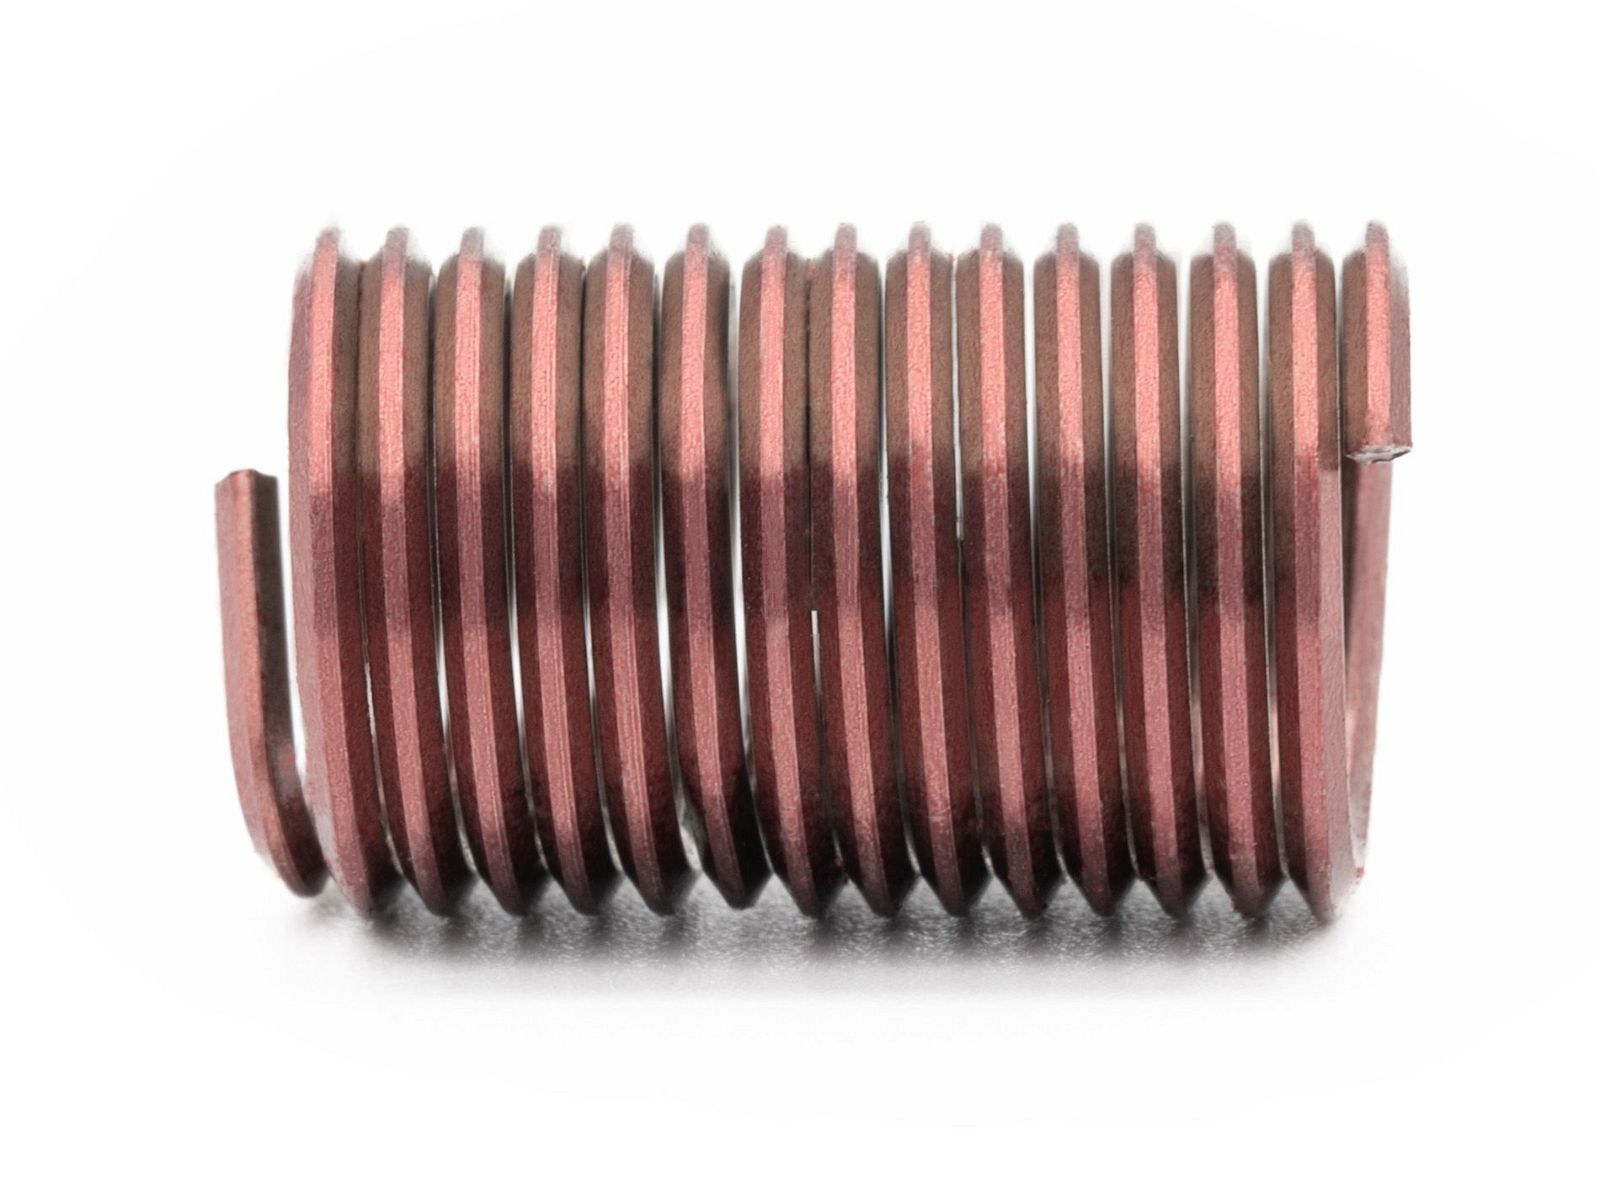 BaerCoil Wire Thread Inserts M 16 x 2.0 - 2.5 D (40 mm) - screw grip (screw locking) - 50 pcs.